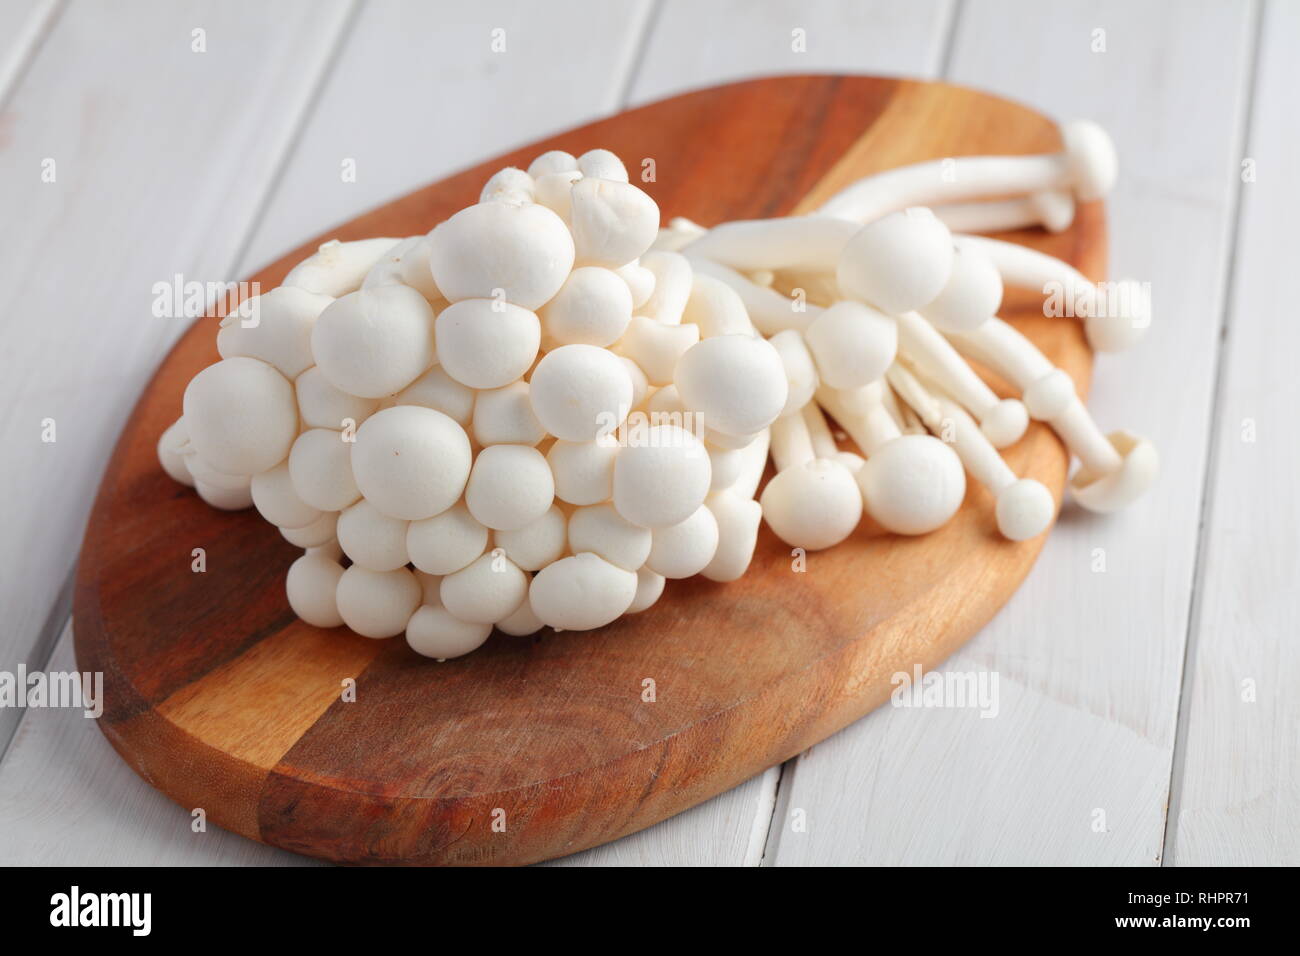 Bouquet de champignons shimeji brut également connu sous le nom de champignons en hêtre blanc sur une planche à découper en bois Banque D'Images